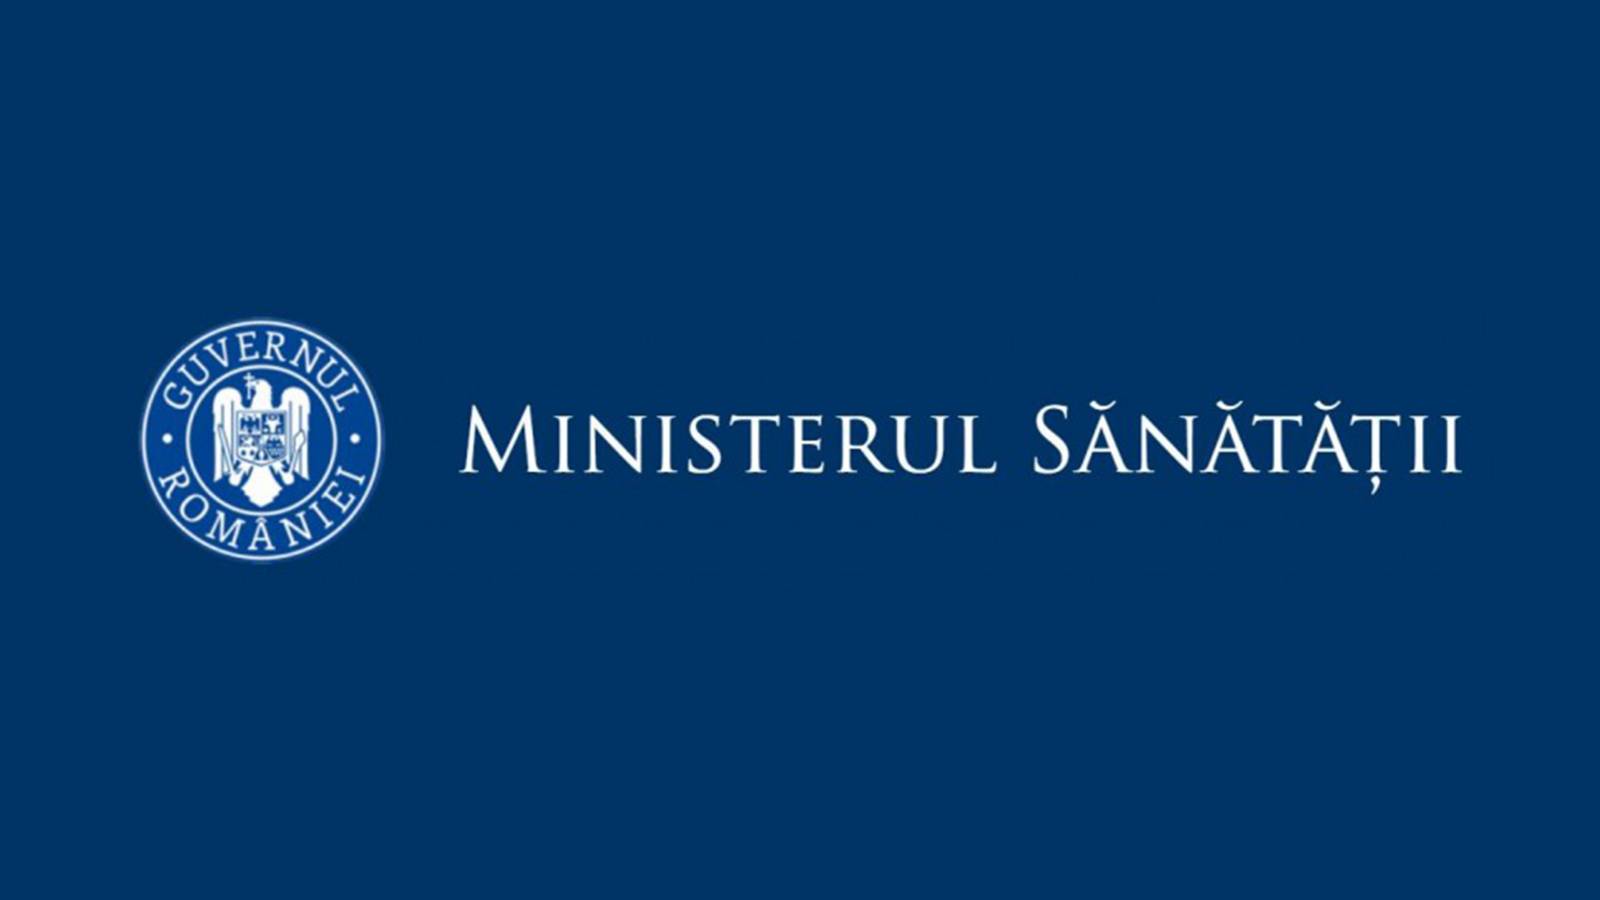 Annuncio del Ministero della Salute Wave 4 Romania